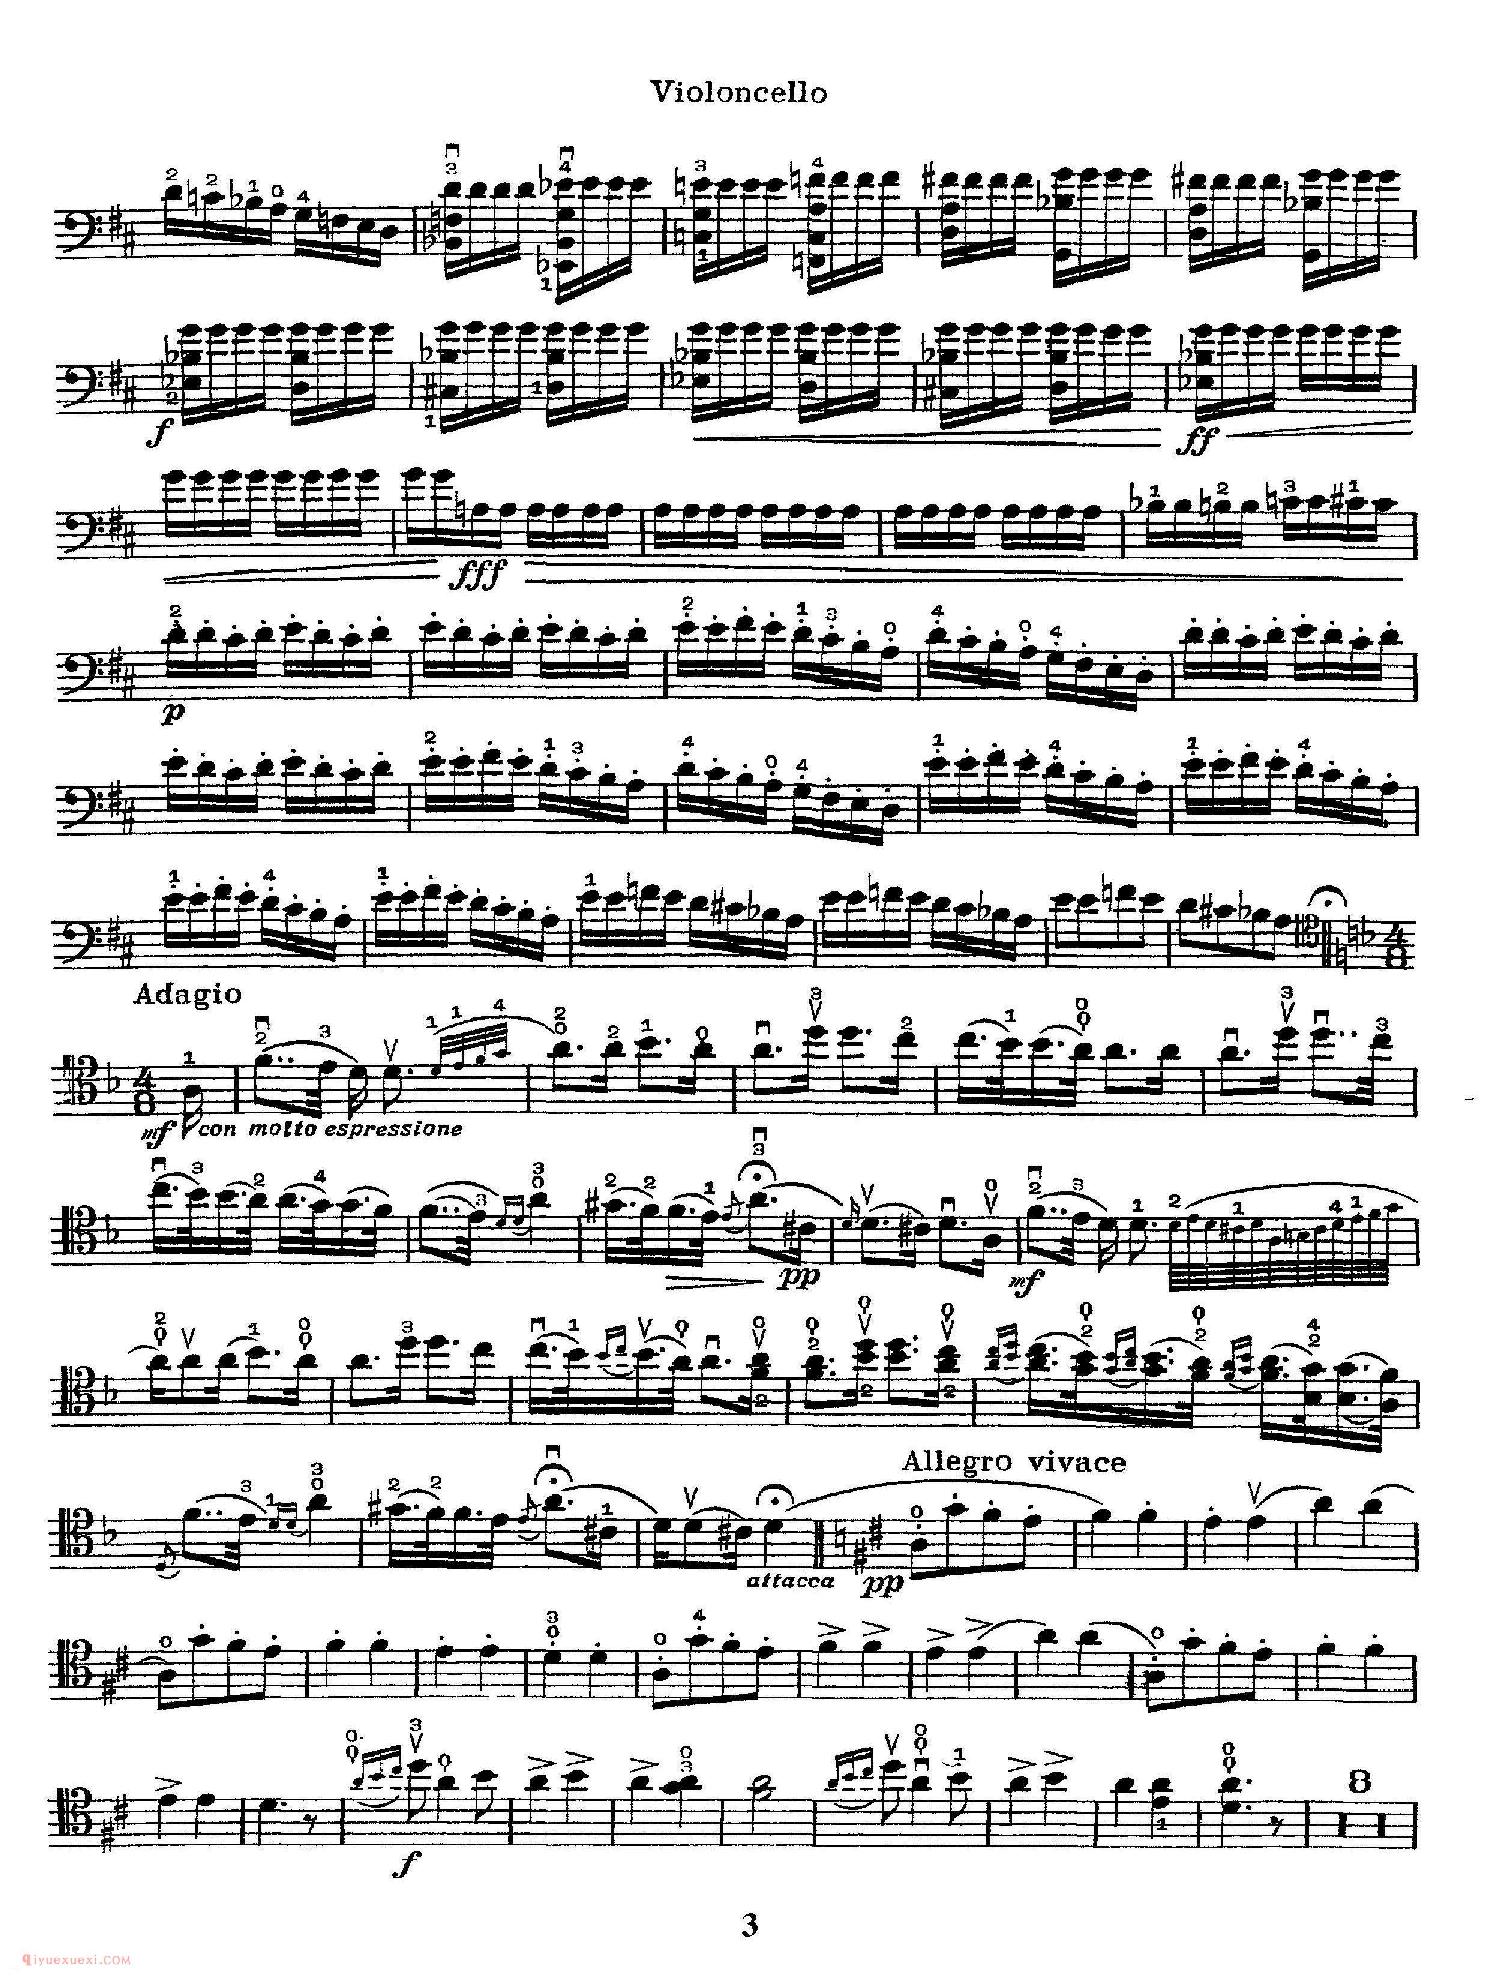 大提琴乐谱《匈牙利狂想曲/Hungarian Rhapsody》大卫·波帕尔